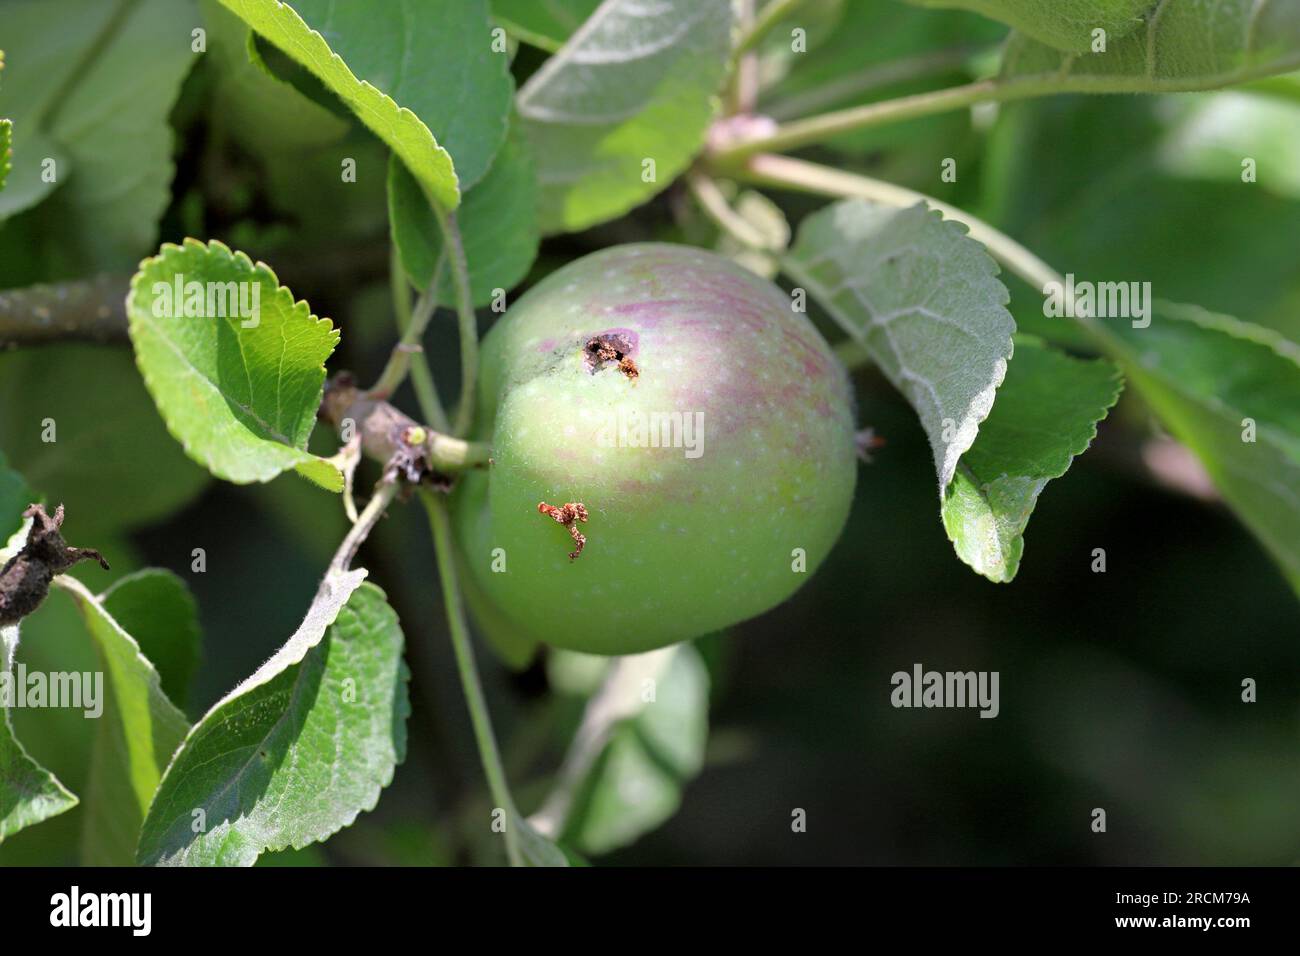 Trou de sortie et frass d'un papillon de cabillaud, cydia pomonella, chenille à la surface d'un fruit de pomme mûrissant. Banque D'Images